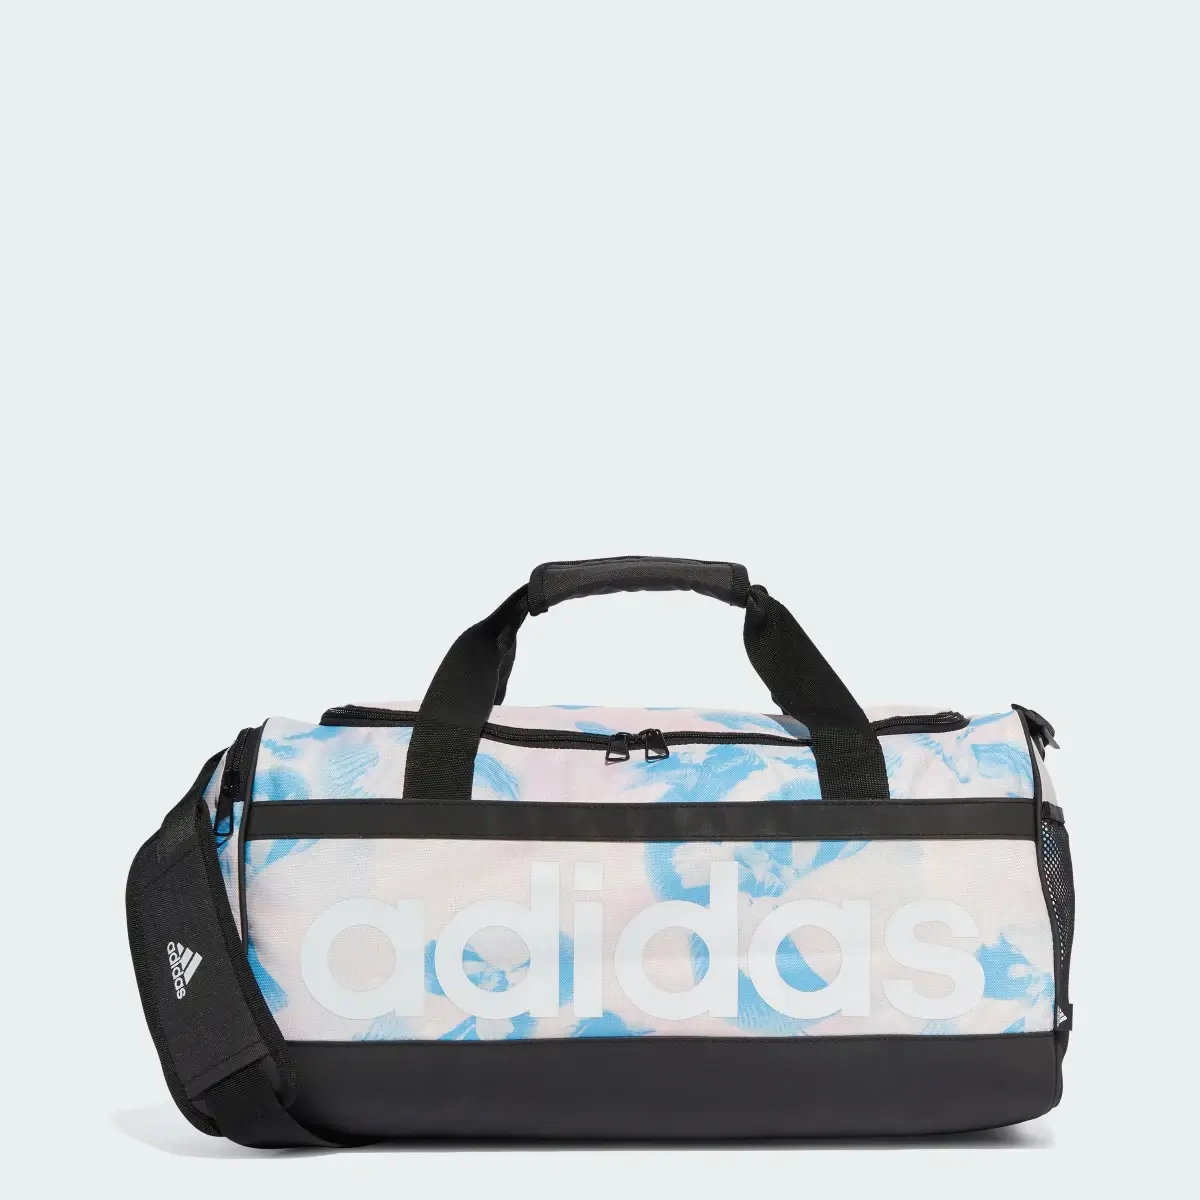 Adidas Essentials Duffel Bag. 1